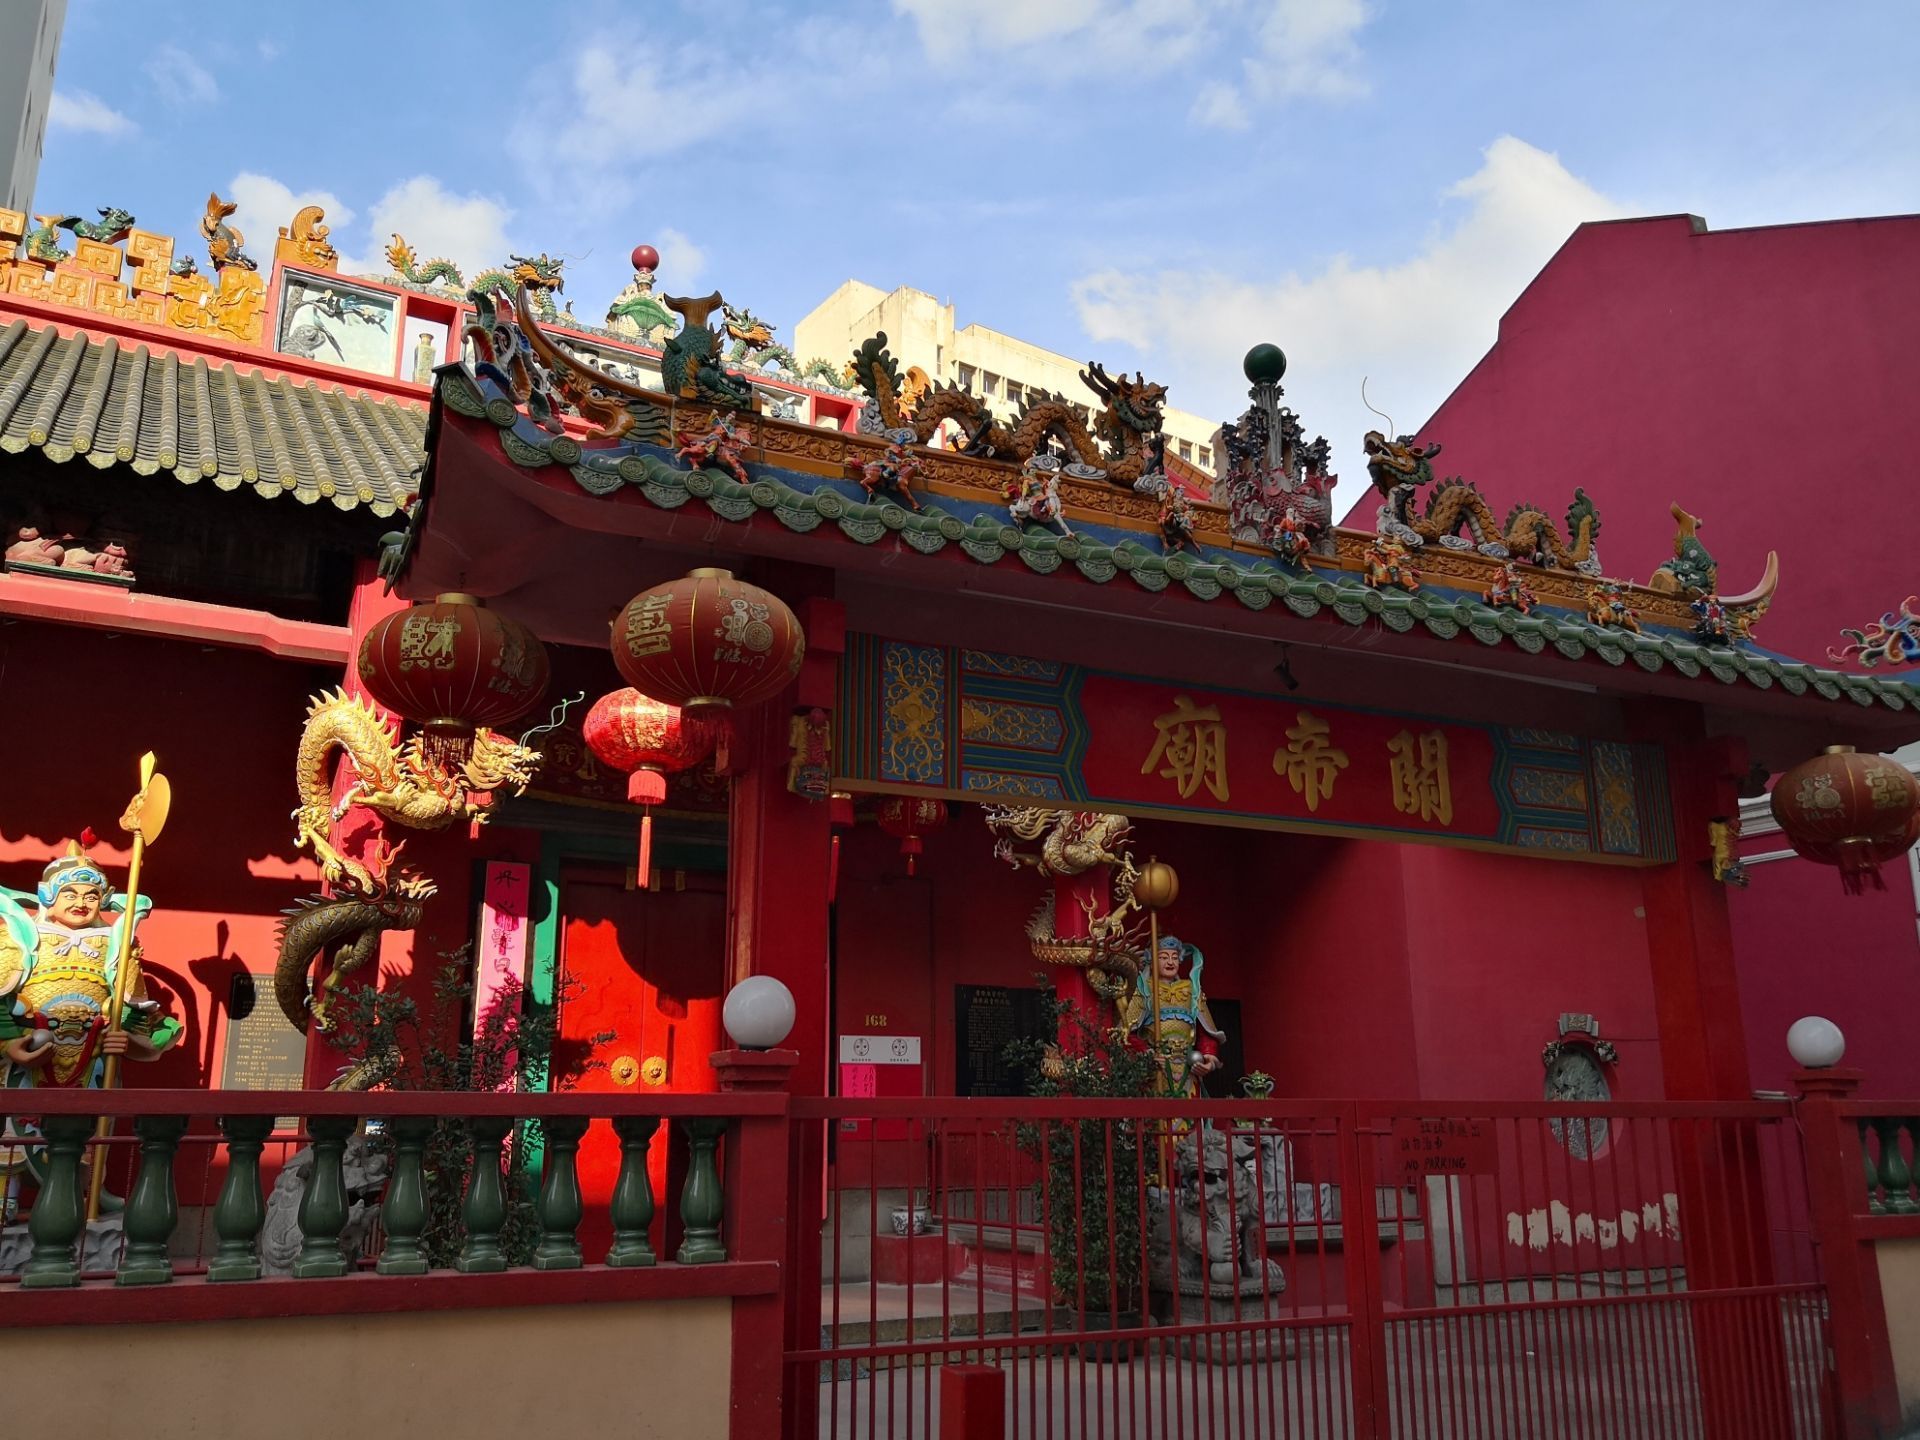 整个关帝庙以大红色为主色调非常的有中国气息绝对值得来参观一下